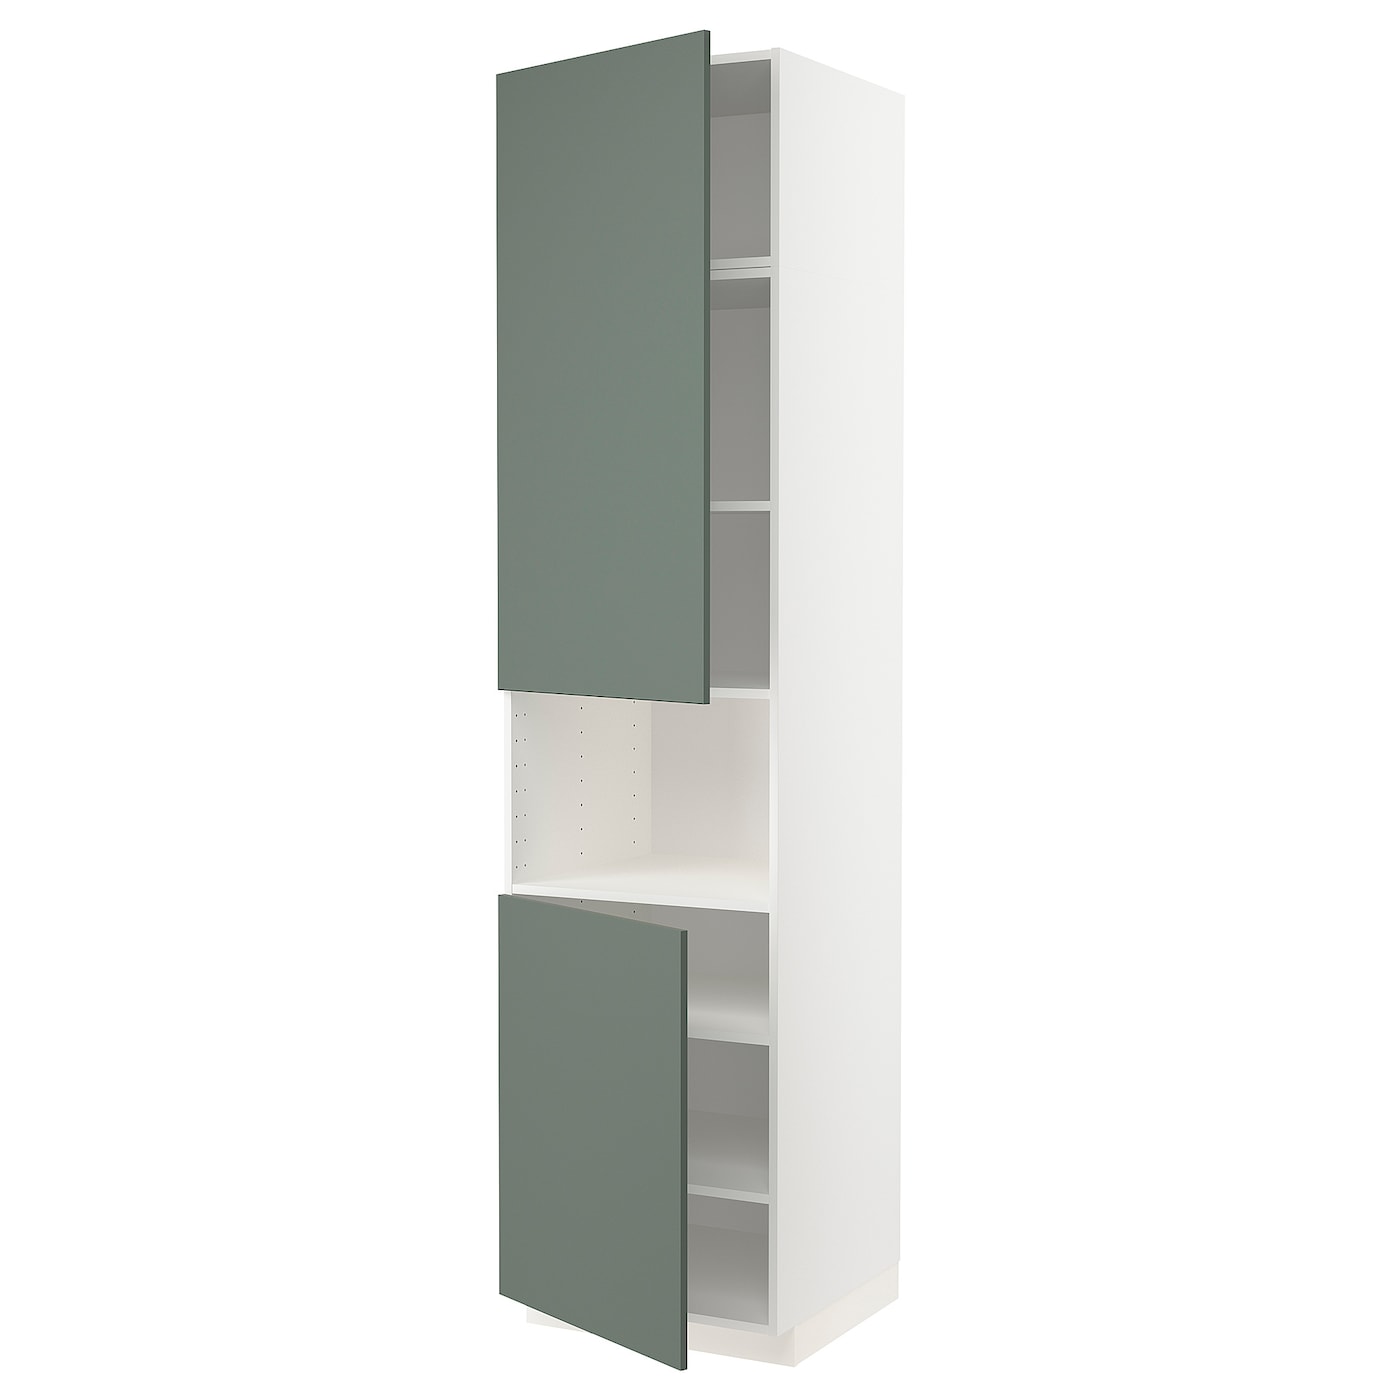 Высокий кухонный шкаф с полками - IKEA METOD/МЕТОД ИКЕА, 240х60х60 см, белый/темно-зеленый